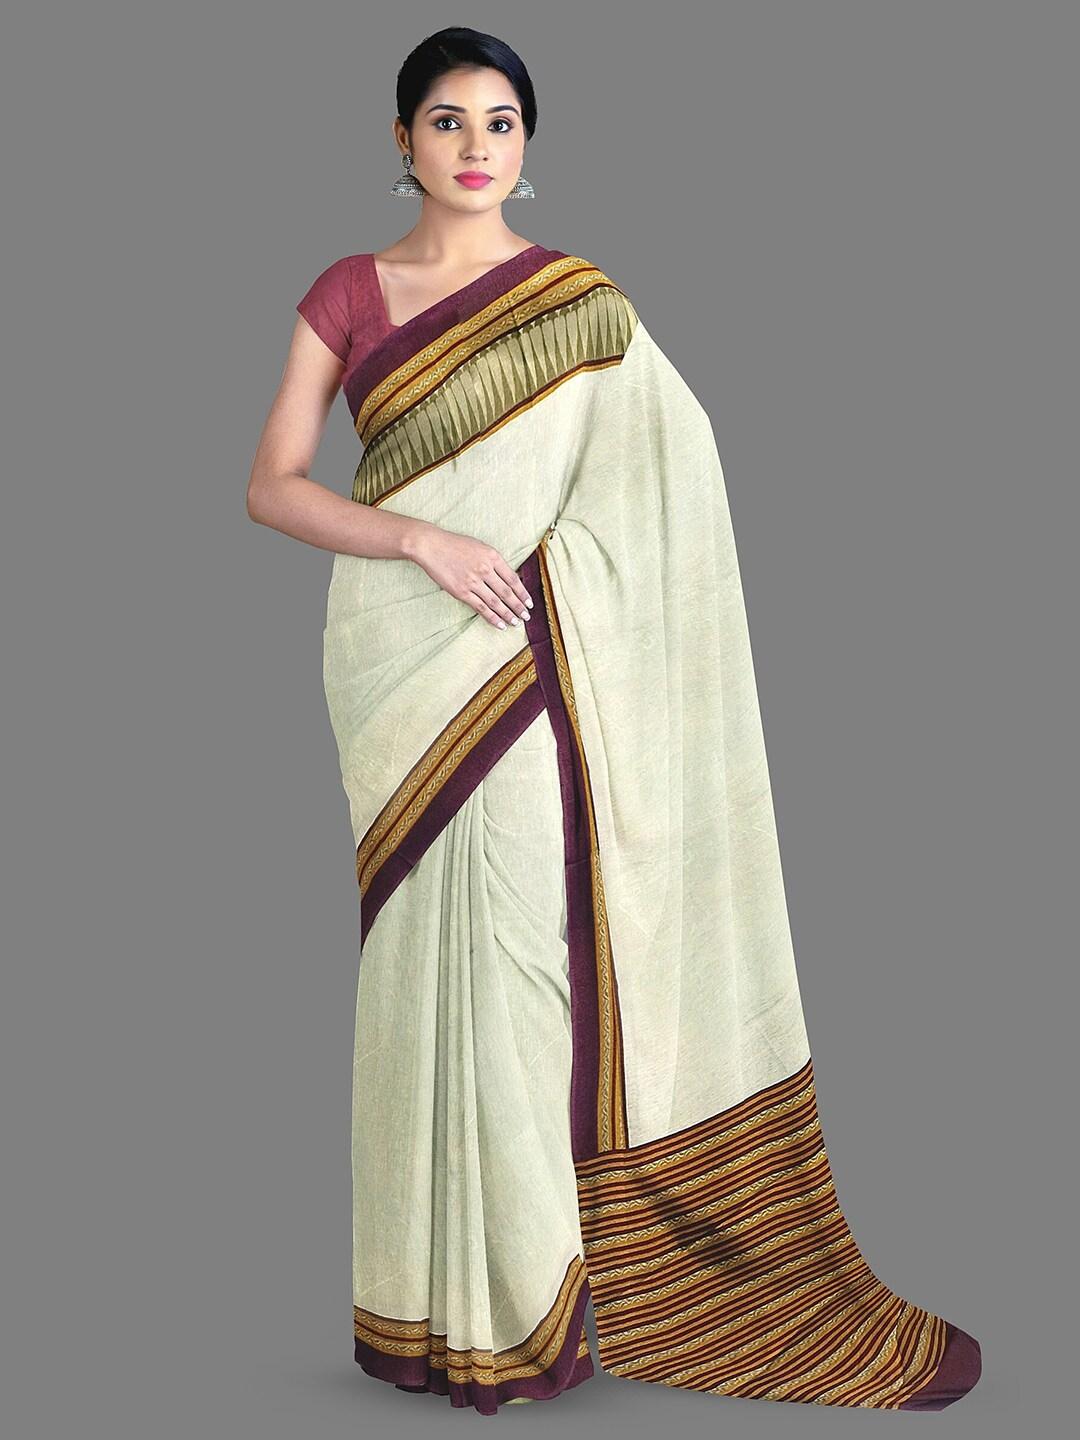 The Chennai Silks Striped Printed Saree